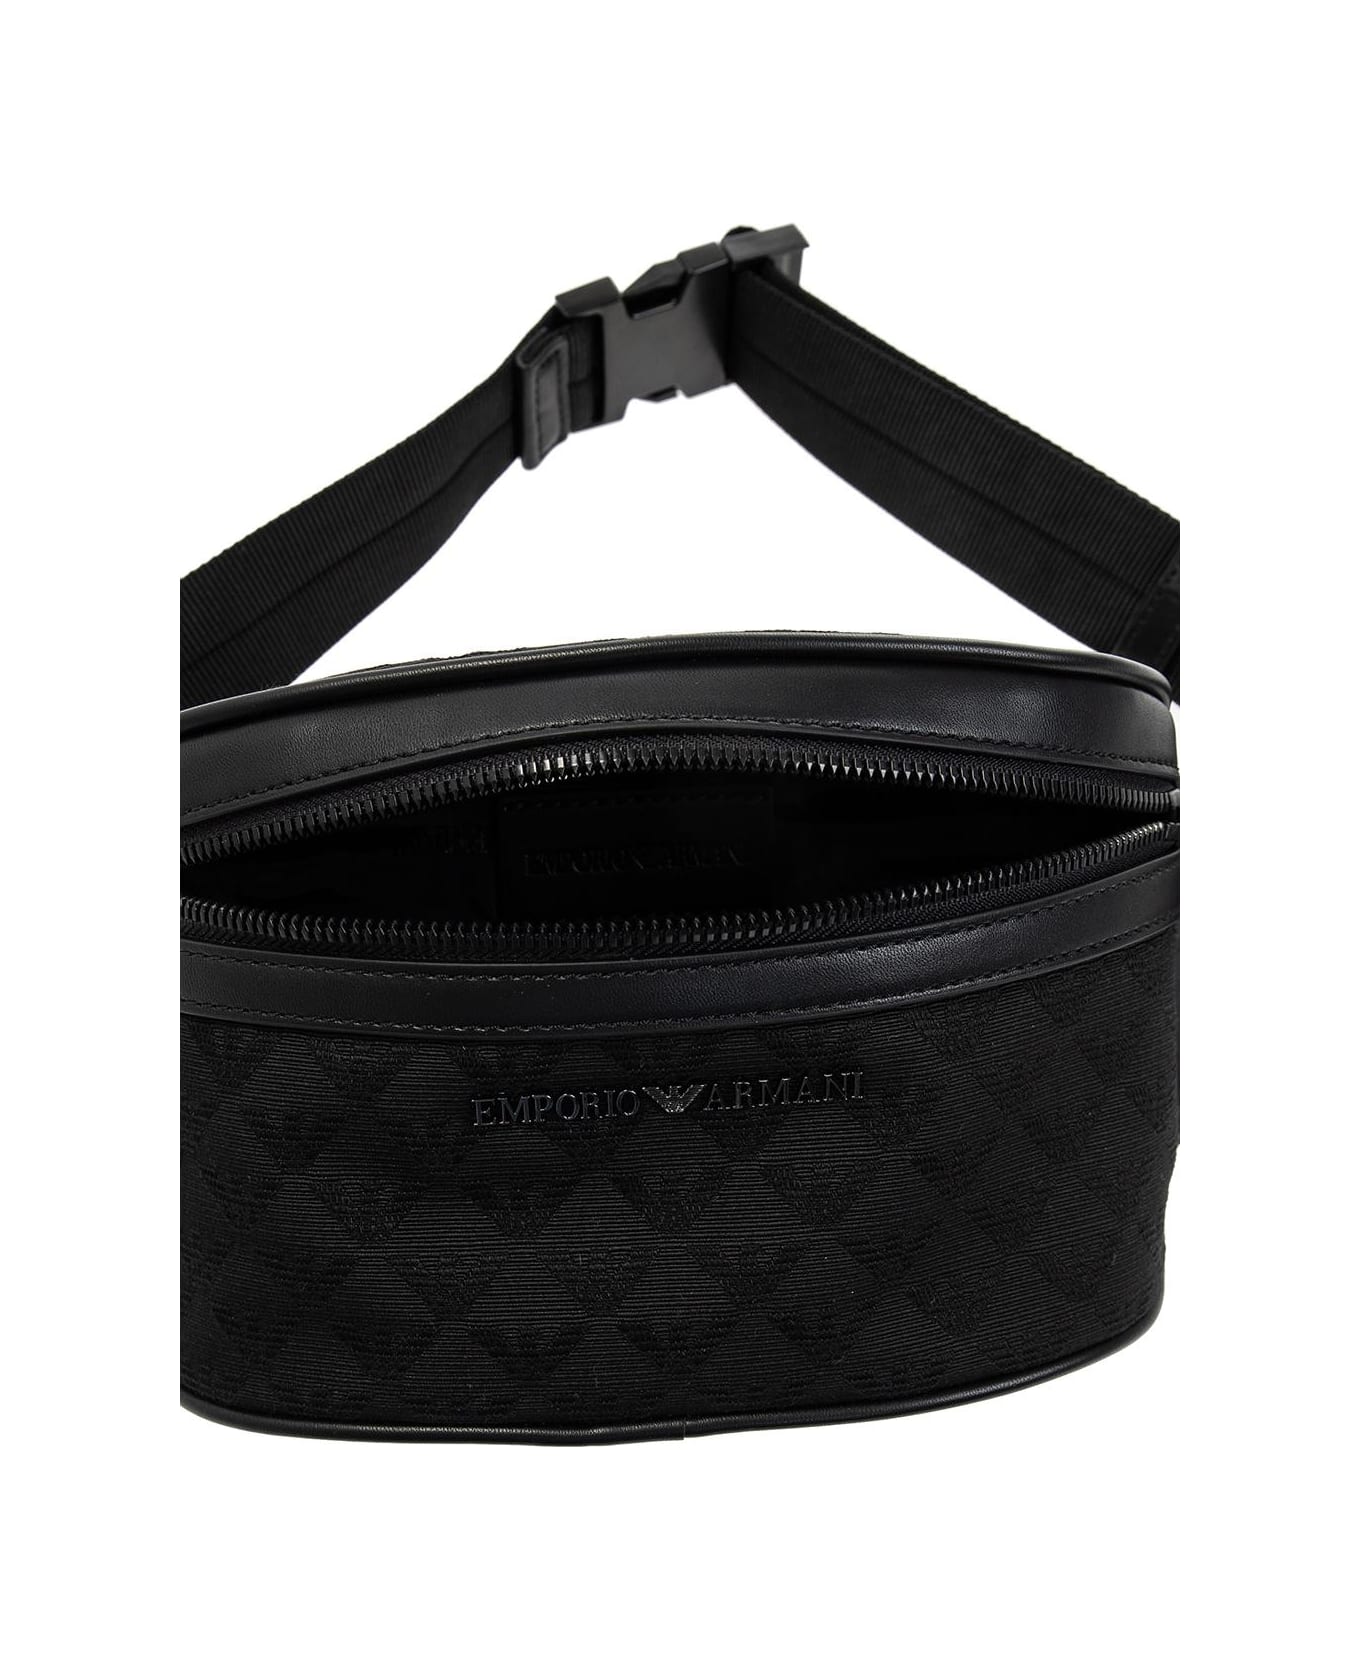 Emporio Armani Belt Bag With Logo - Black/Black/Black ベルトバッグ